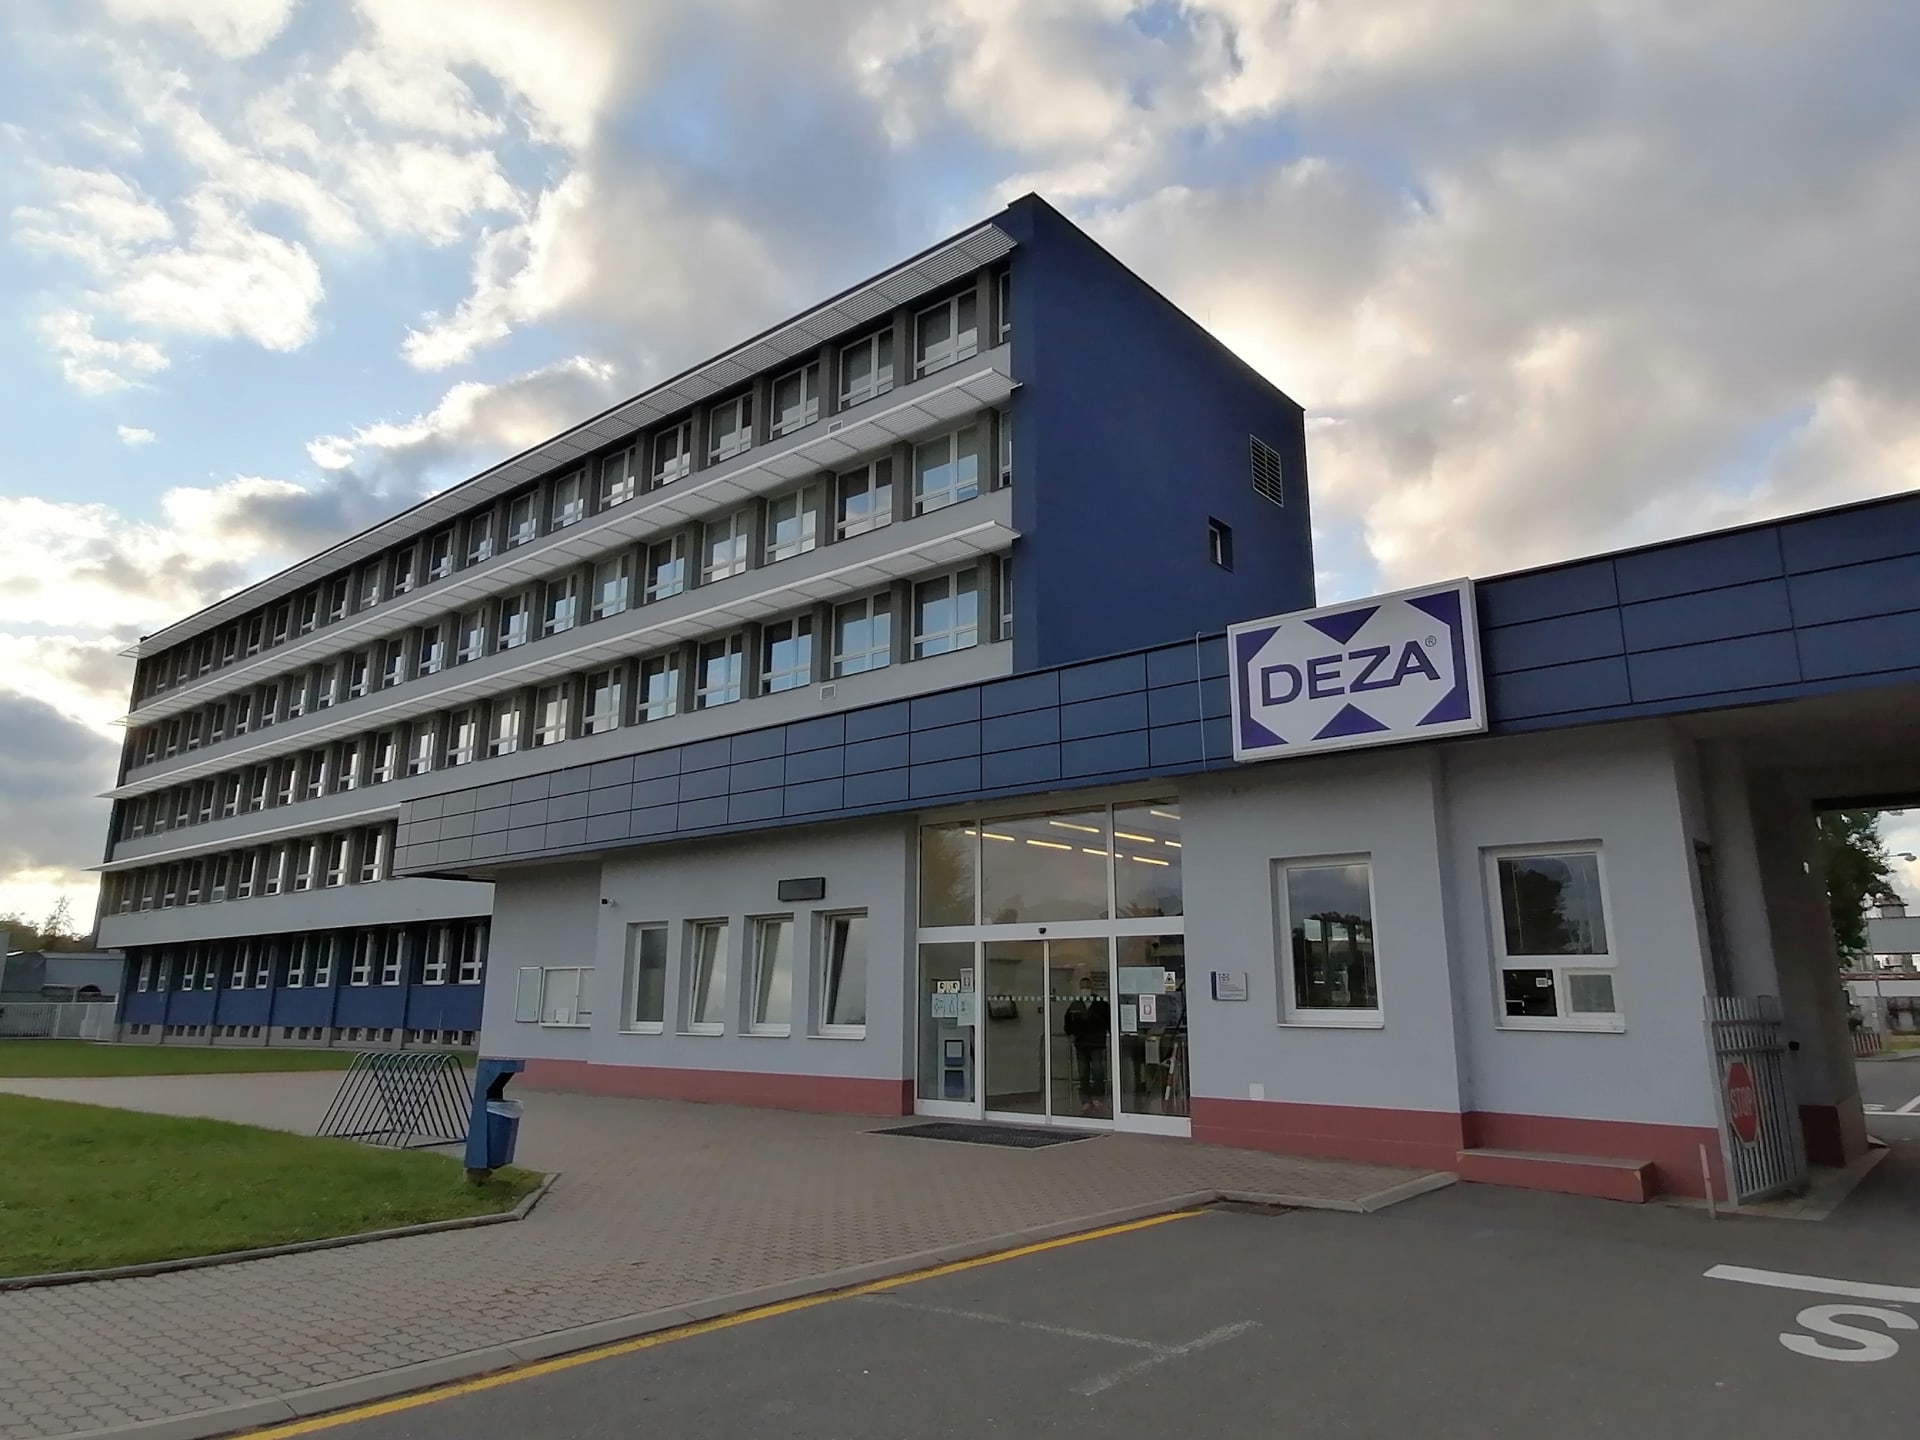 Chemická továrna Deza ve Valašském Meziříčí, hlavní vchod